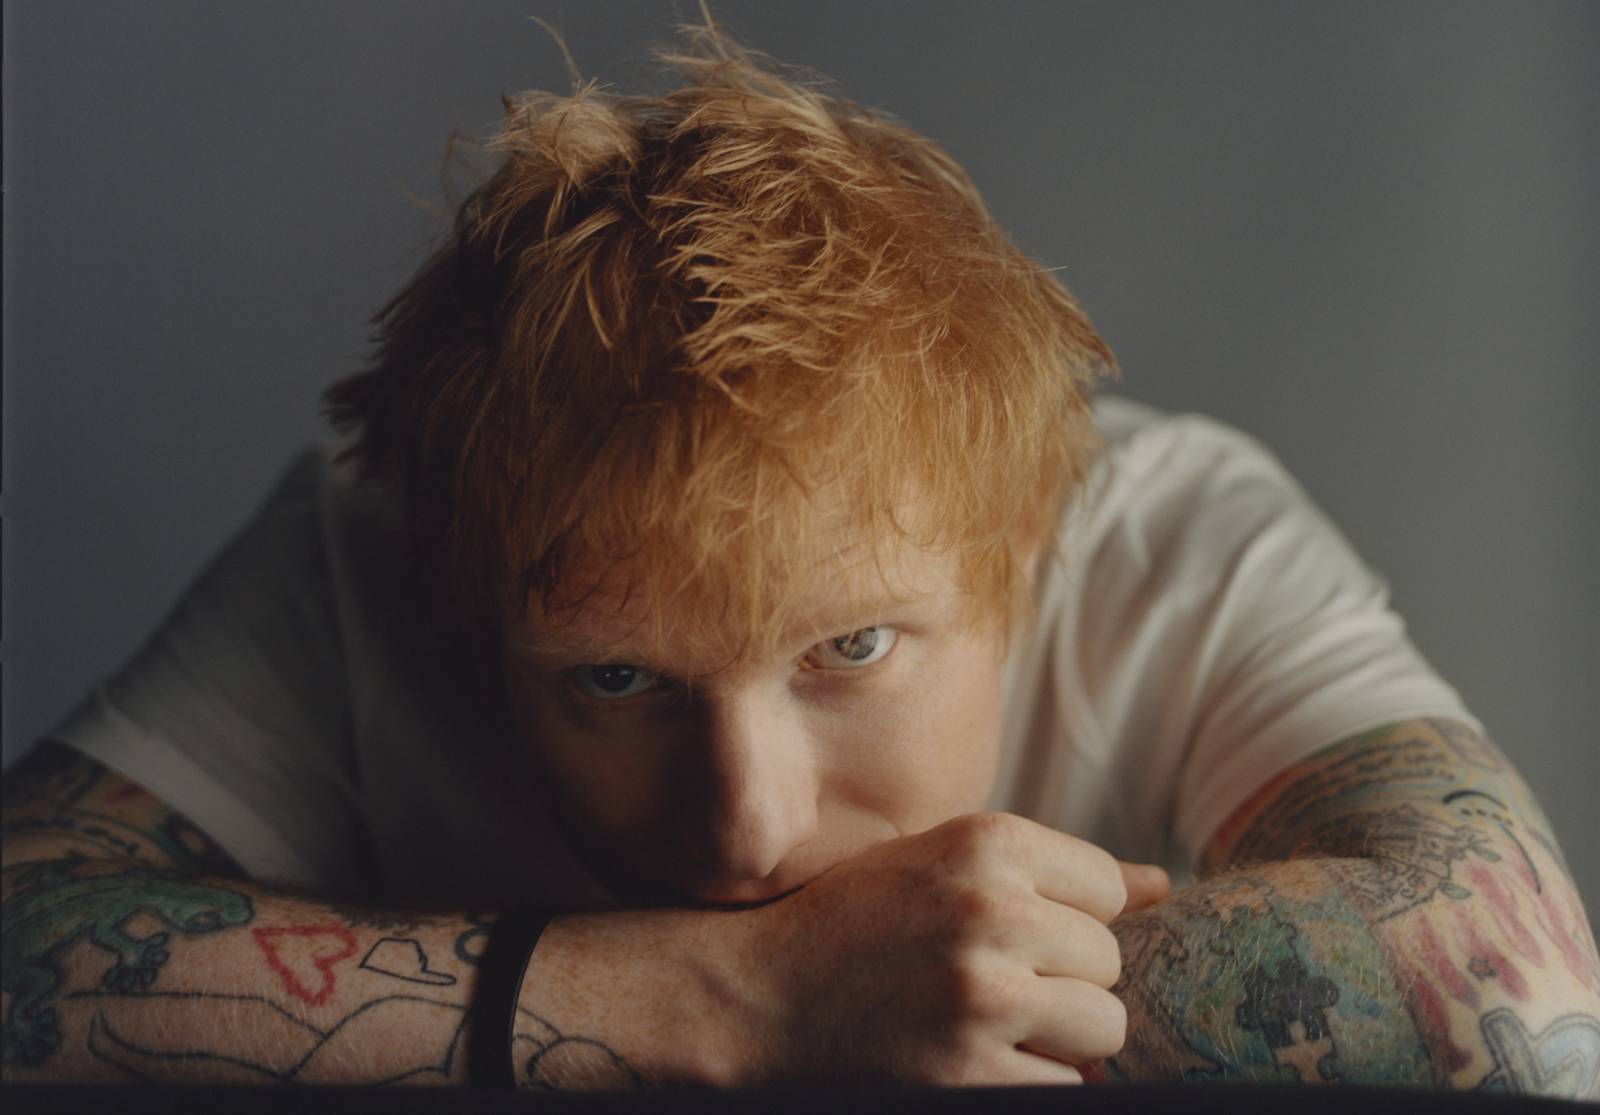 RECENZE: Nové album Eda Sheerana zavání komerčním kalkulem. Světlé momenty se rozplývají v mlze hustého klišé